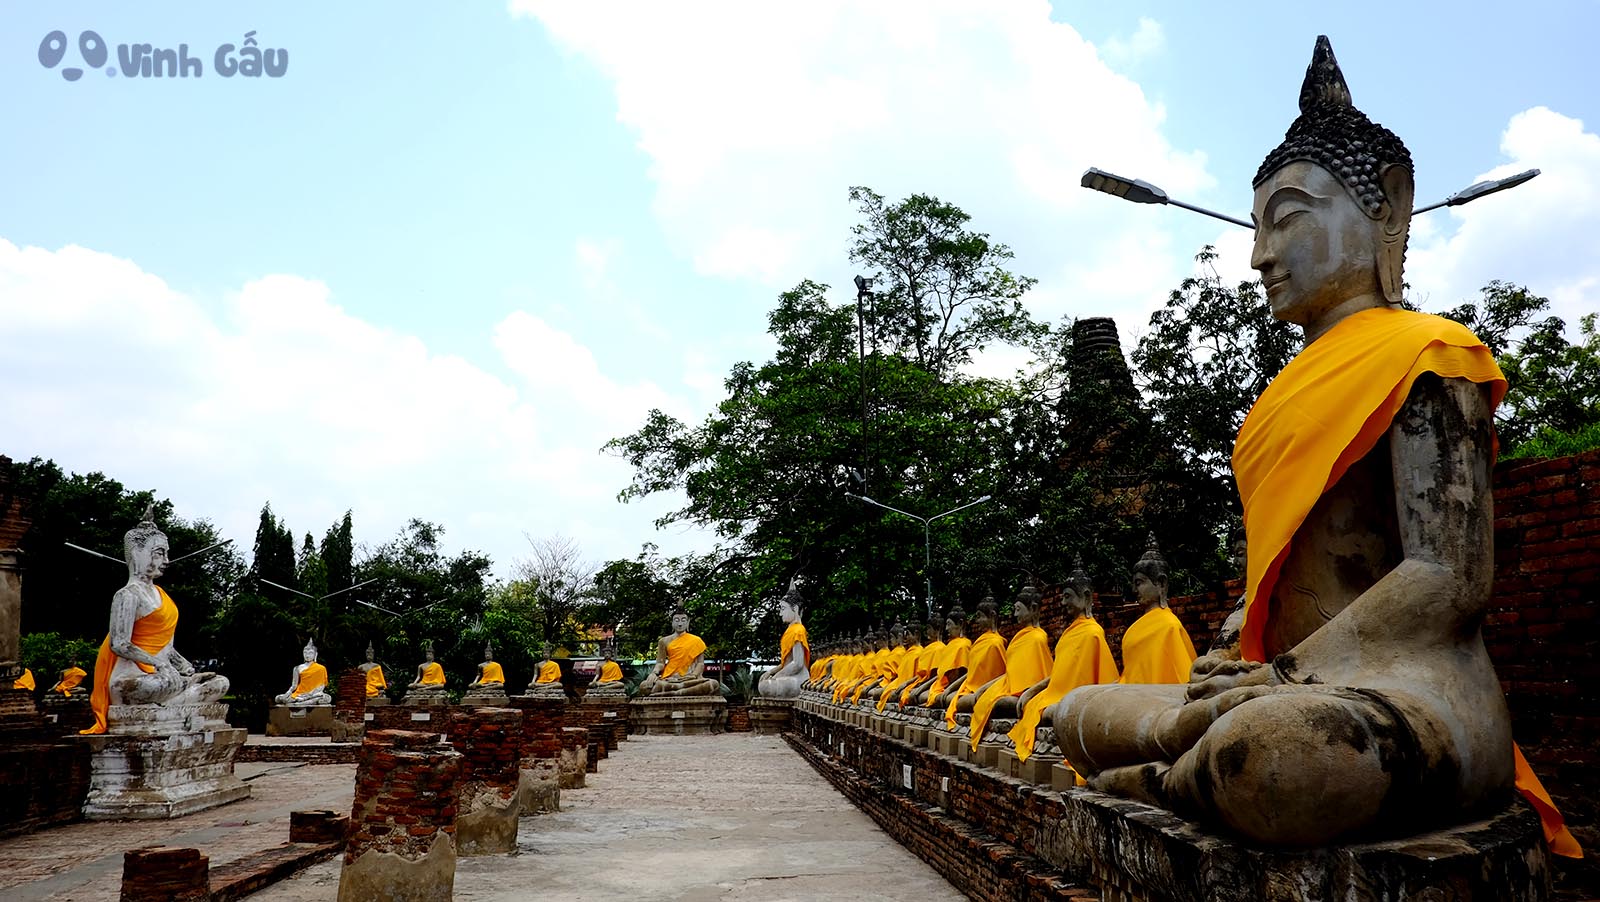 Du lịch Thái Lan tự túc - cố đô Ayutthaya